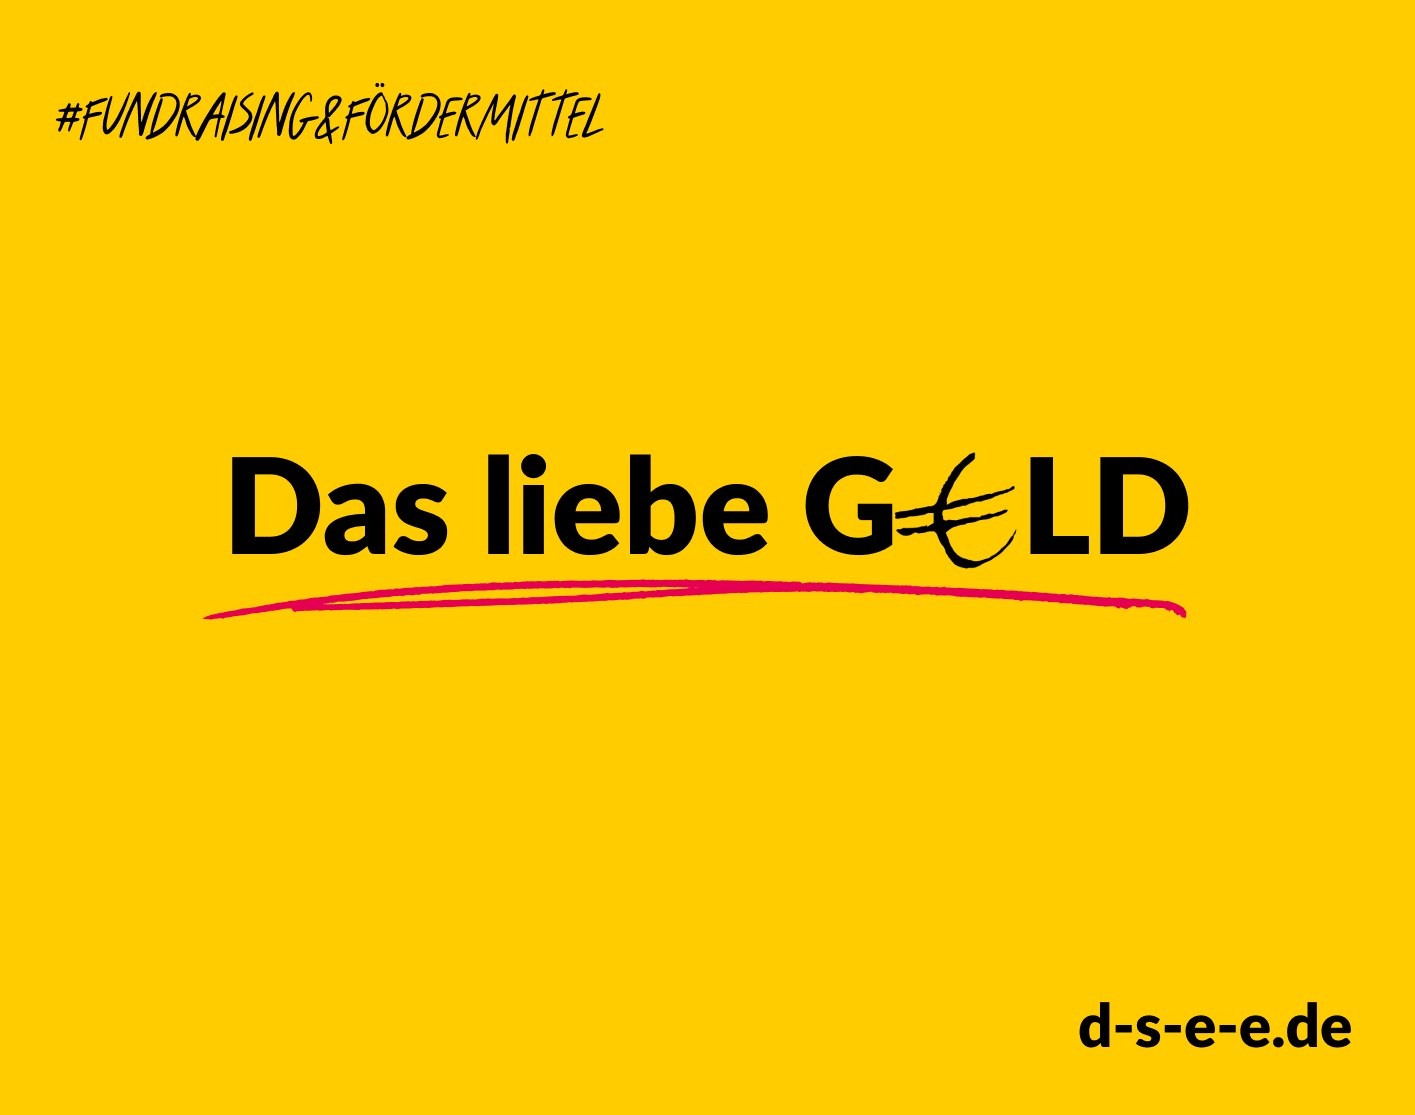 Grafik mit gelbem Hintergrund. Text: #Fundraising & Fördermittel. Das liebe Geld. d-s-e-e.de